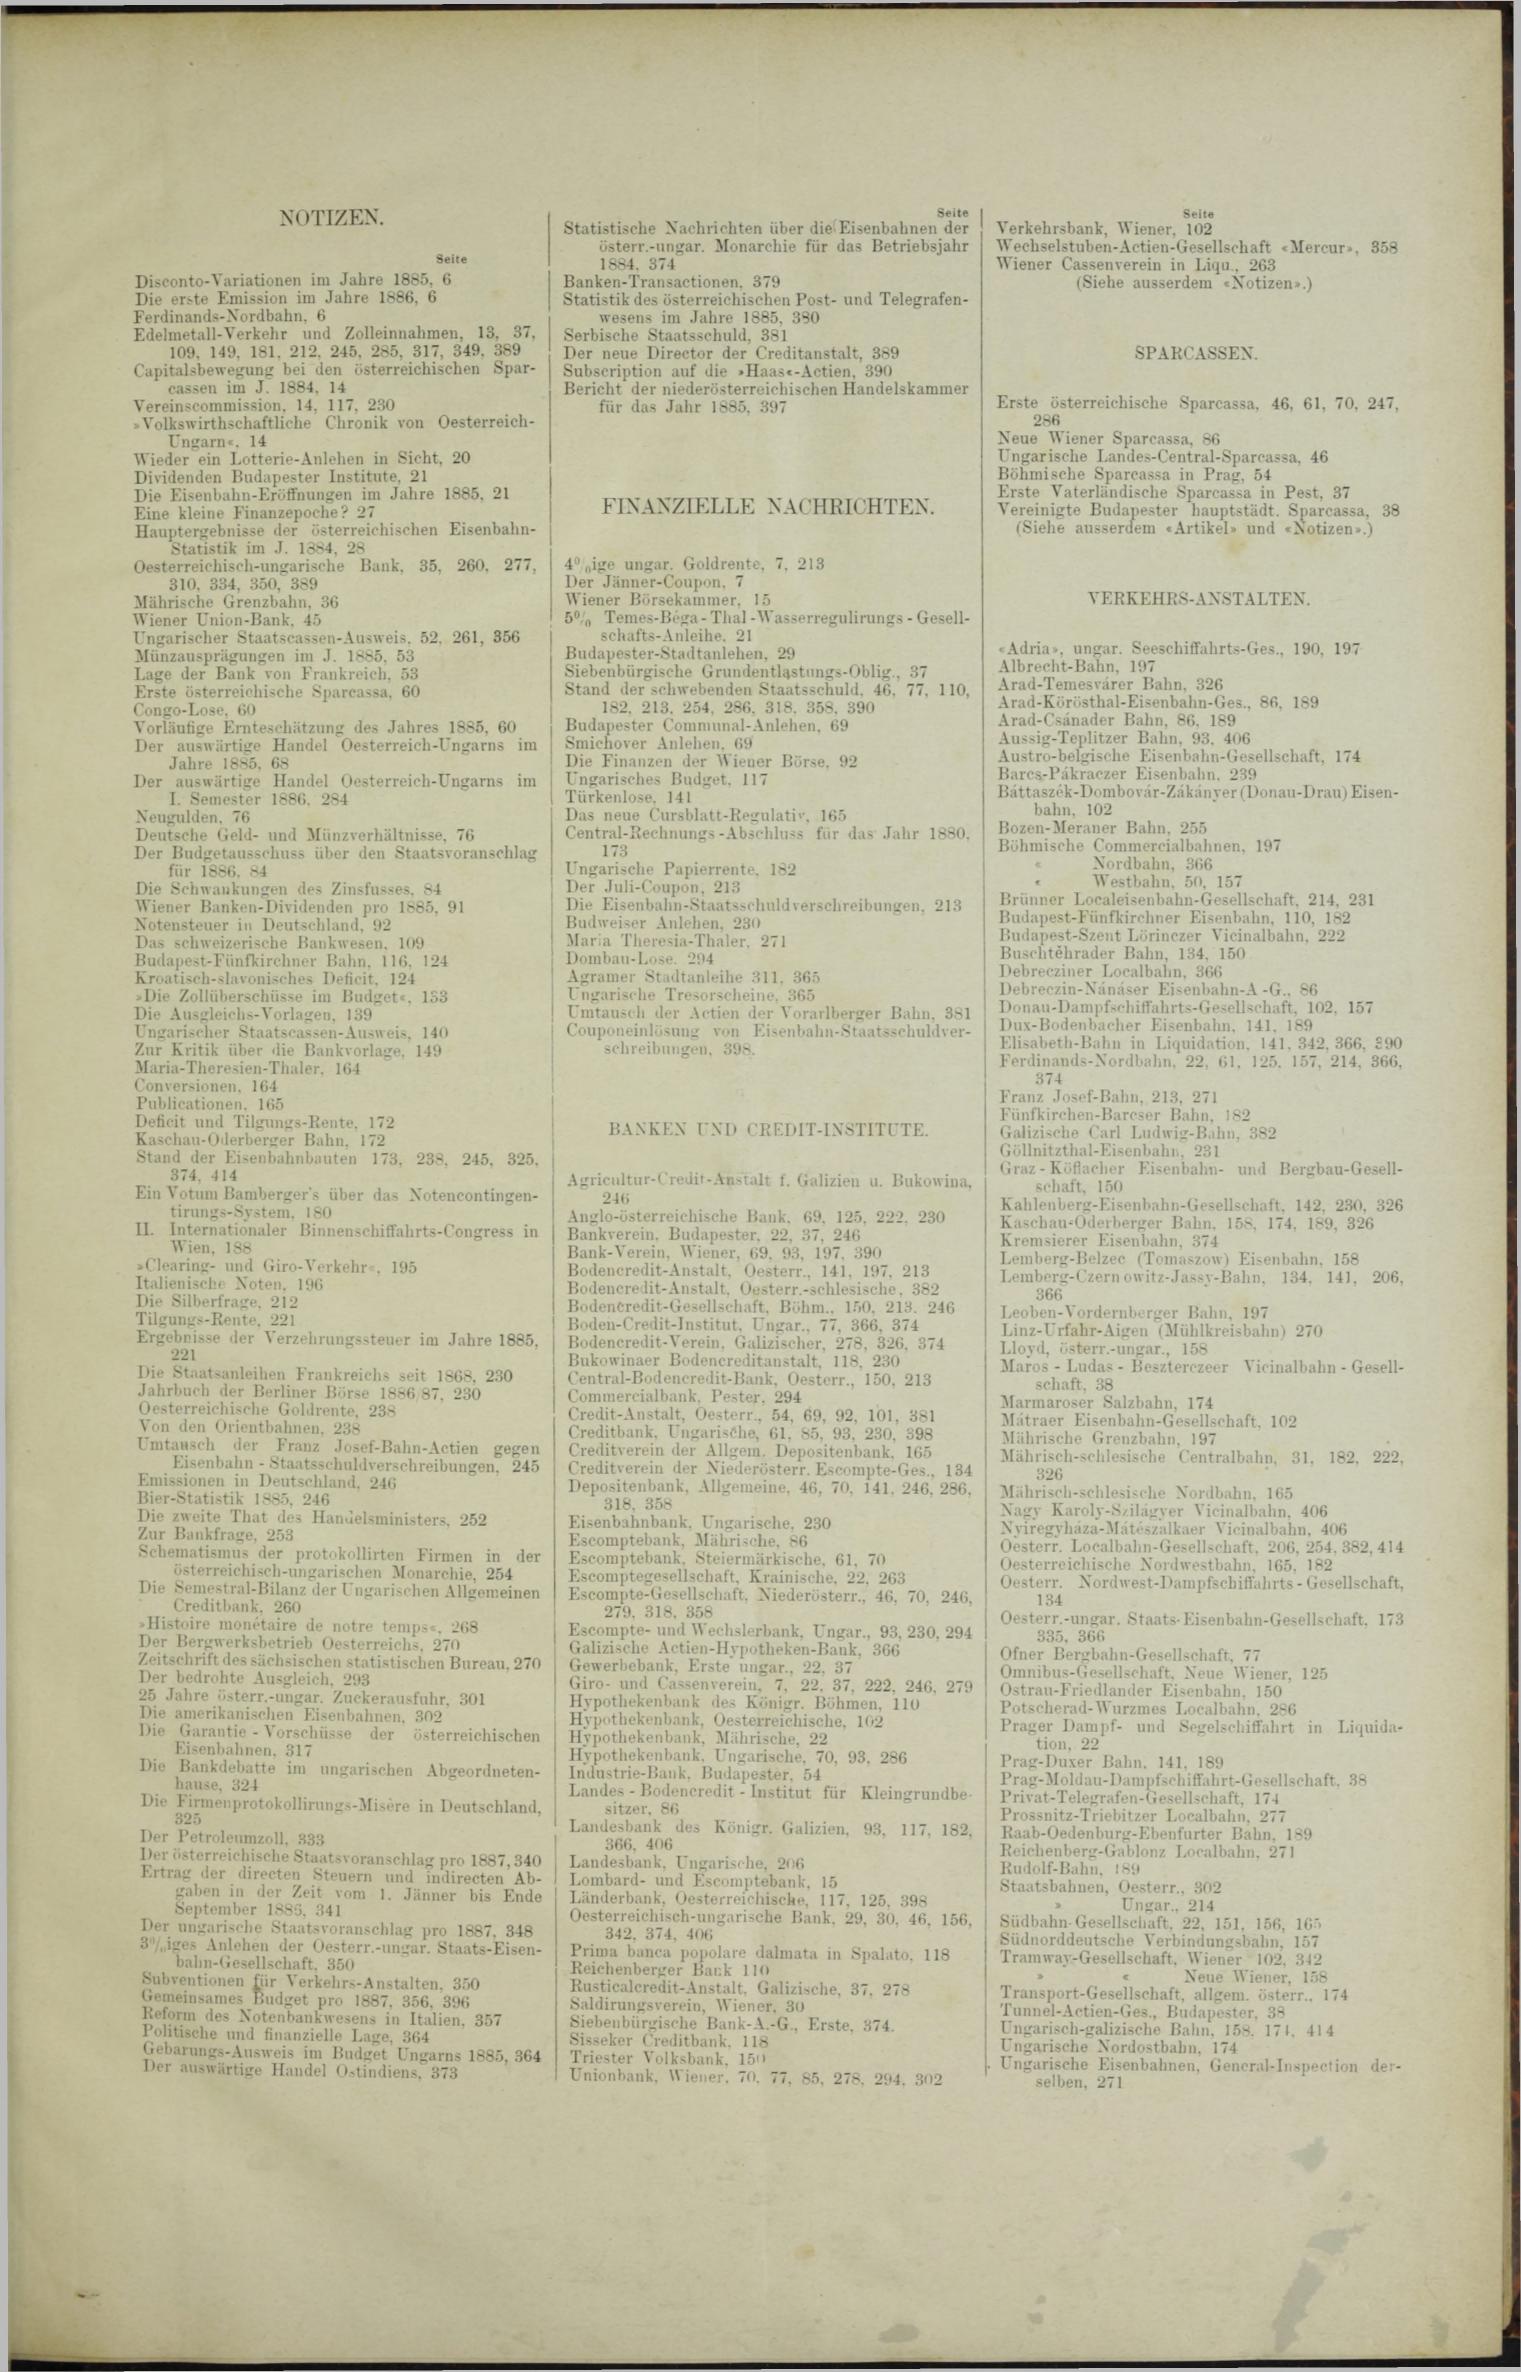 Der Tresor 23.12.1886 - Seite 11